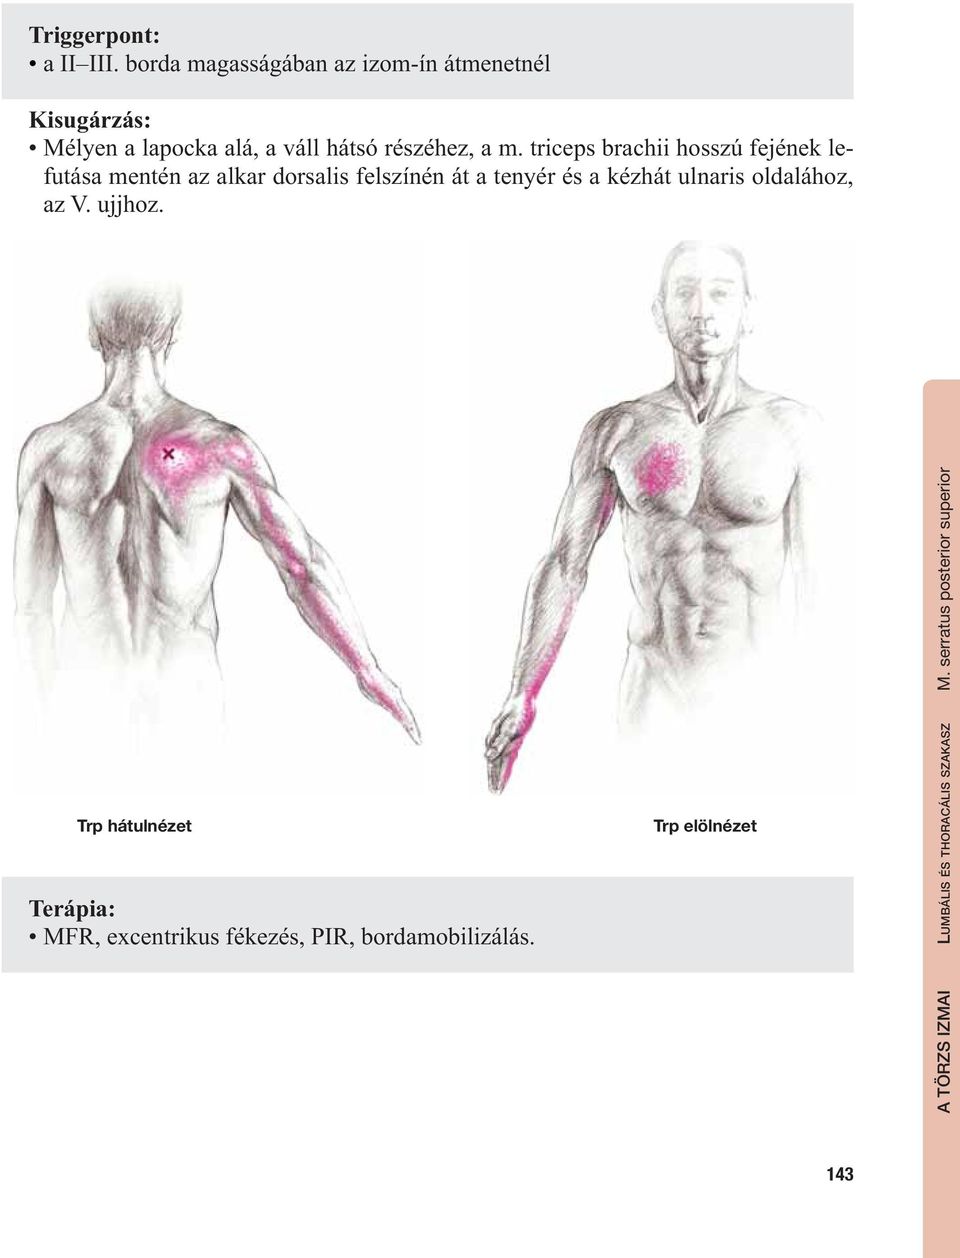 triceps brachii hosszú fejének lefutása mentén az alkar dorsalis felszínén át a tenyér és a kézhát